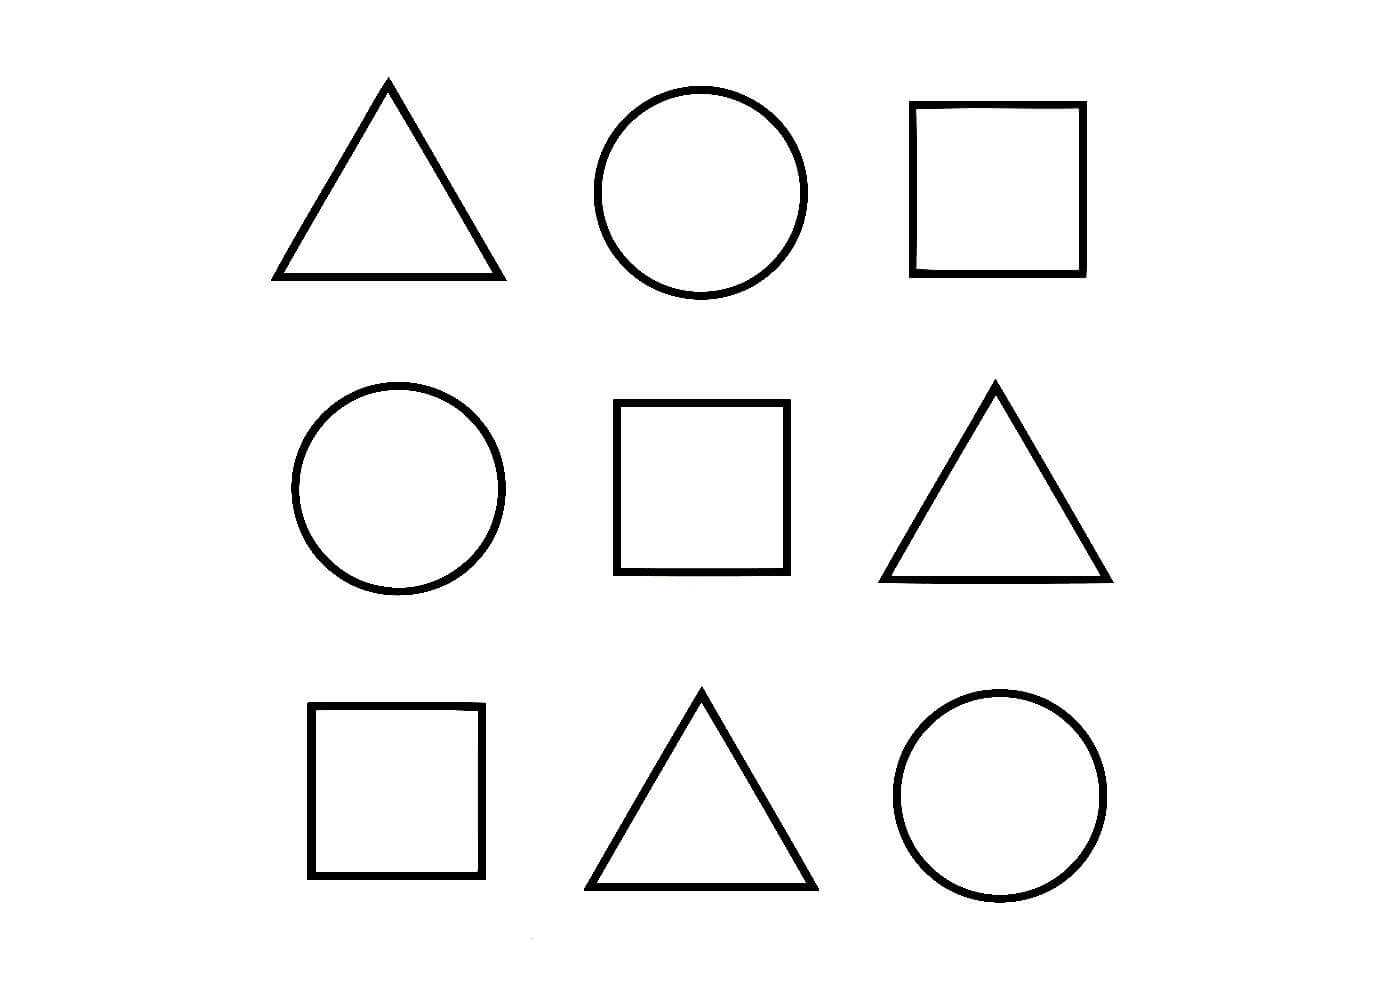 Пятиугольники на плоскости Лобачевского